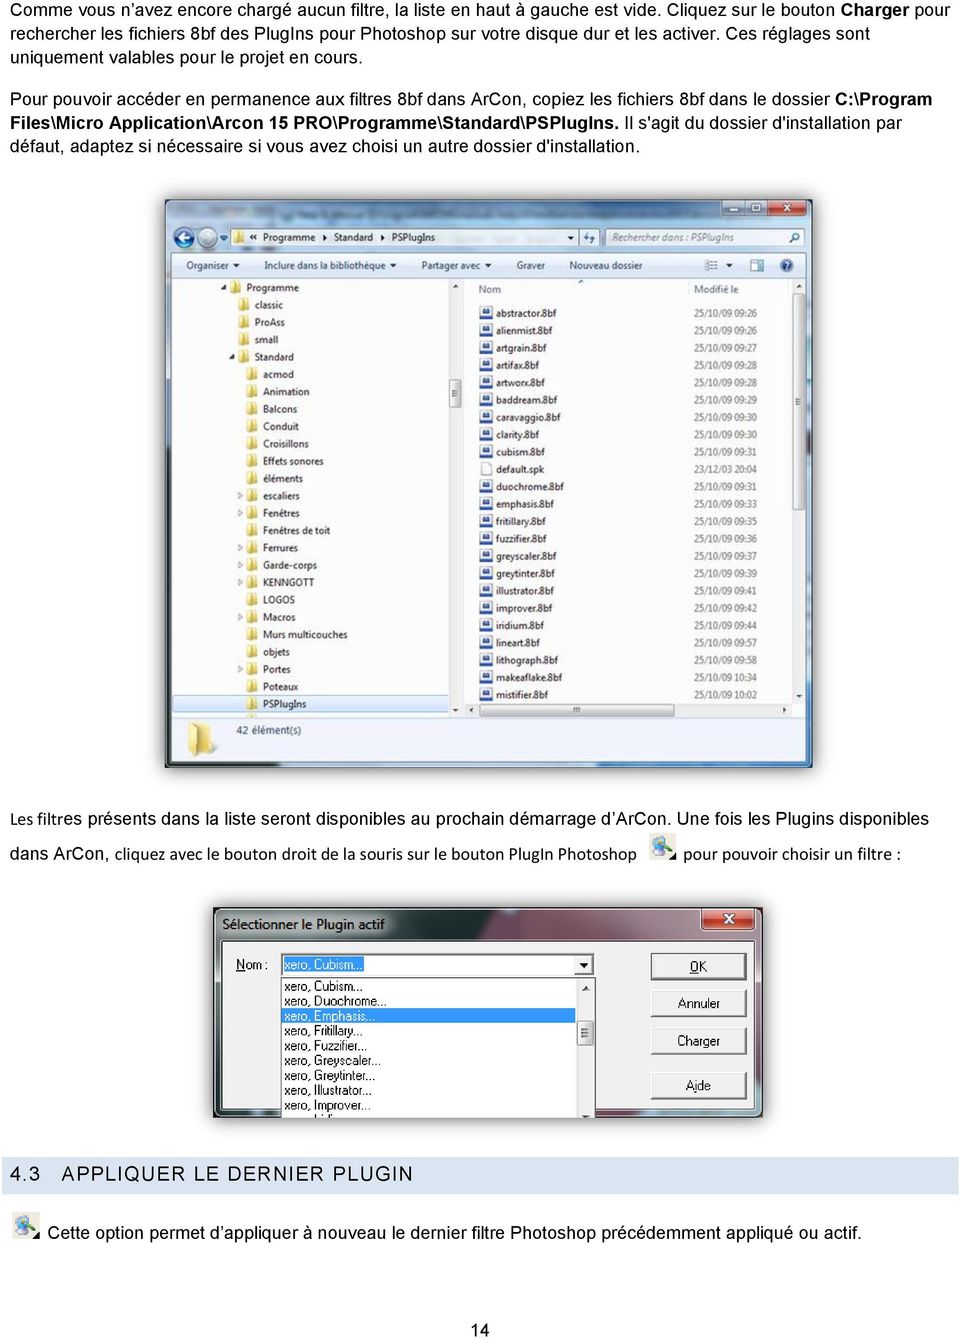 Pour pouvoir accéder en permanence aux filtres 8bf dans ArCon, copiez les fichiers 8bf dans le dossier C:\Program Files\Micro Application\Arcon 15 PRO\Programme\Standard\PSPlugIns.